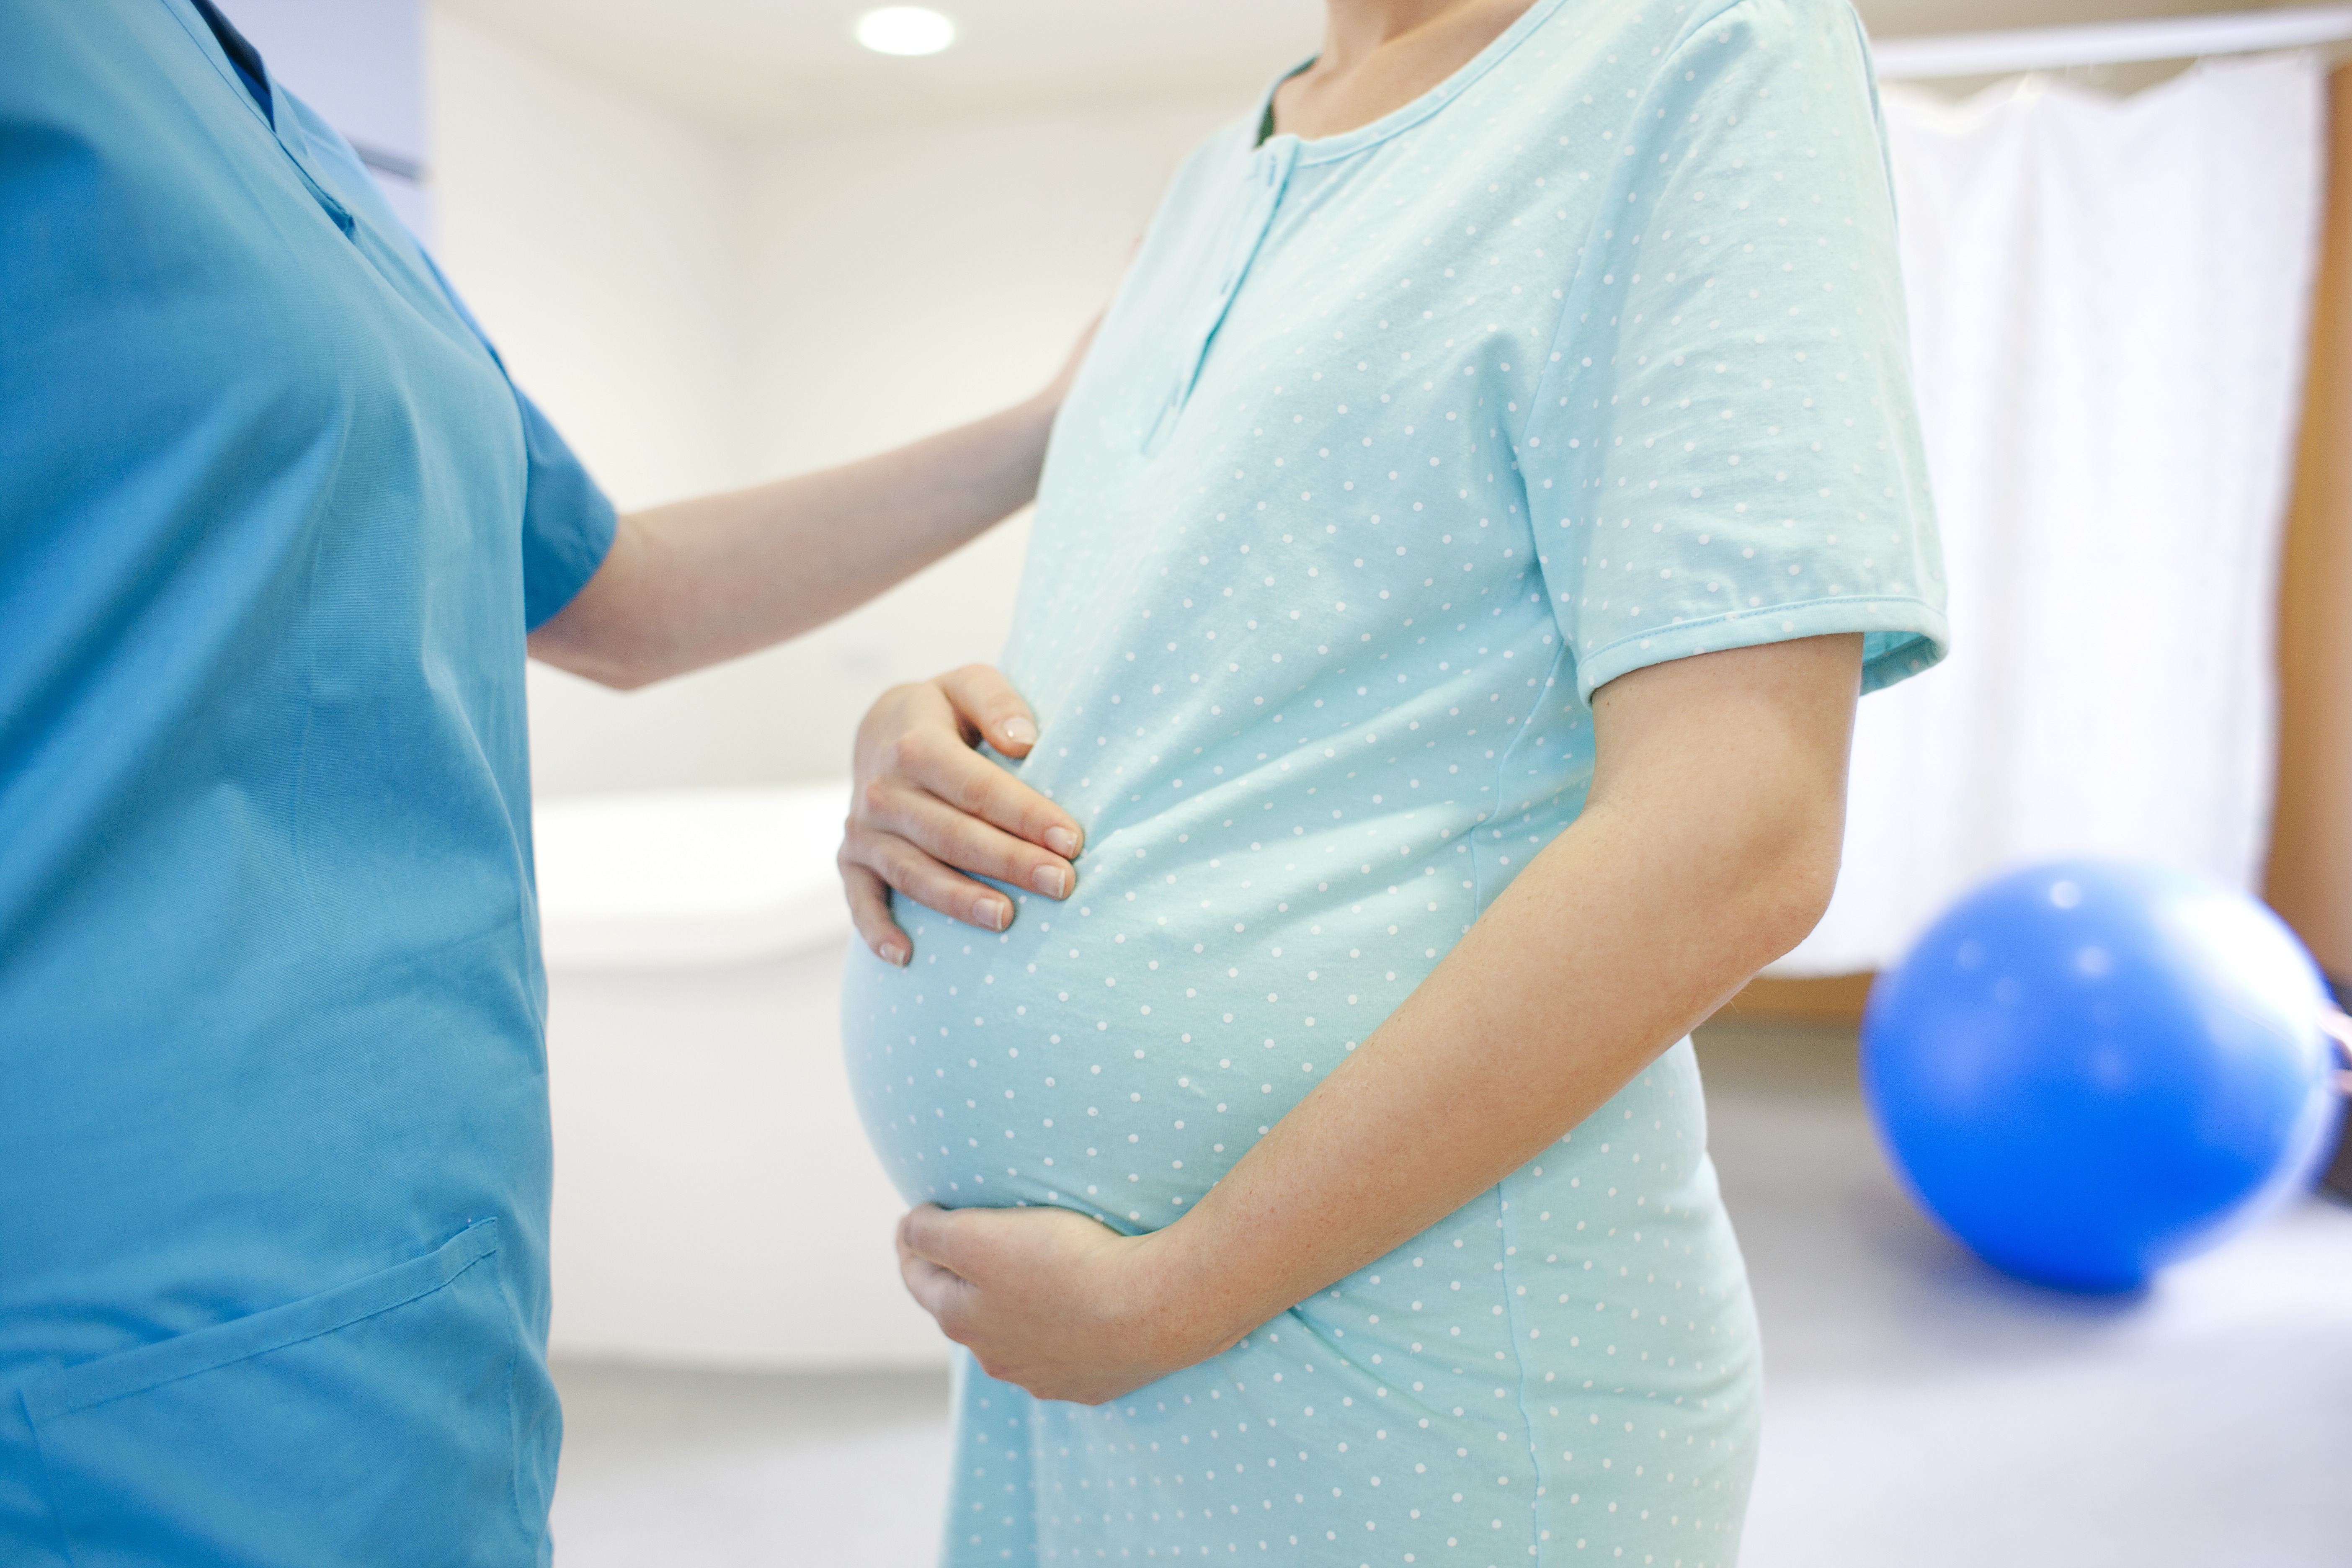 Cuando el empleador desconoce el embarazo y el contrato laboral termina no hay fuero de maternidad